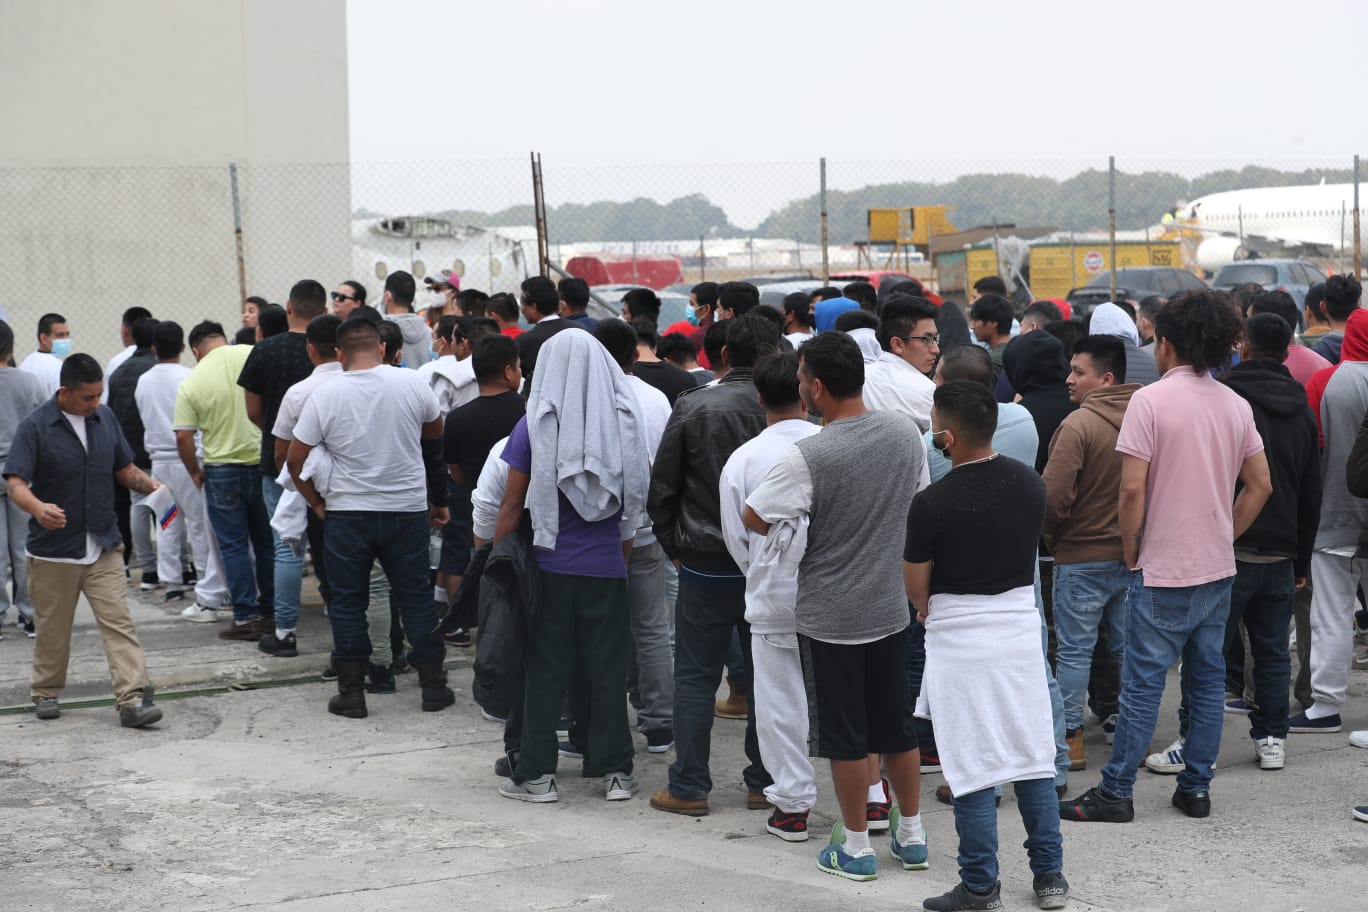 Al menos 385 guatemaltecos deportados desde EE. UU. arribaron este jueves 11 de mayo al país, constituyendo el último grupo de personas que será sometido al Título 42. (Foto Prensa Libre: Roberto López)